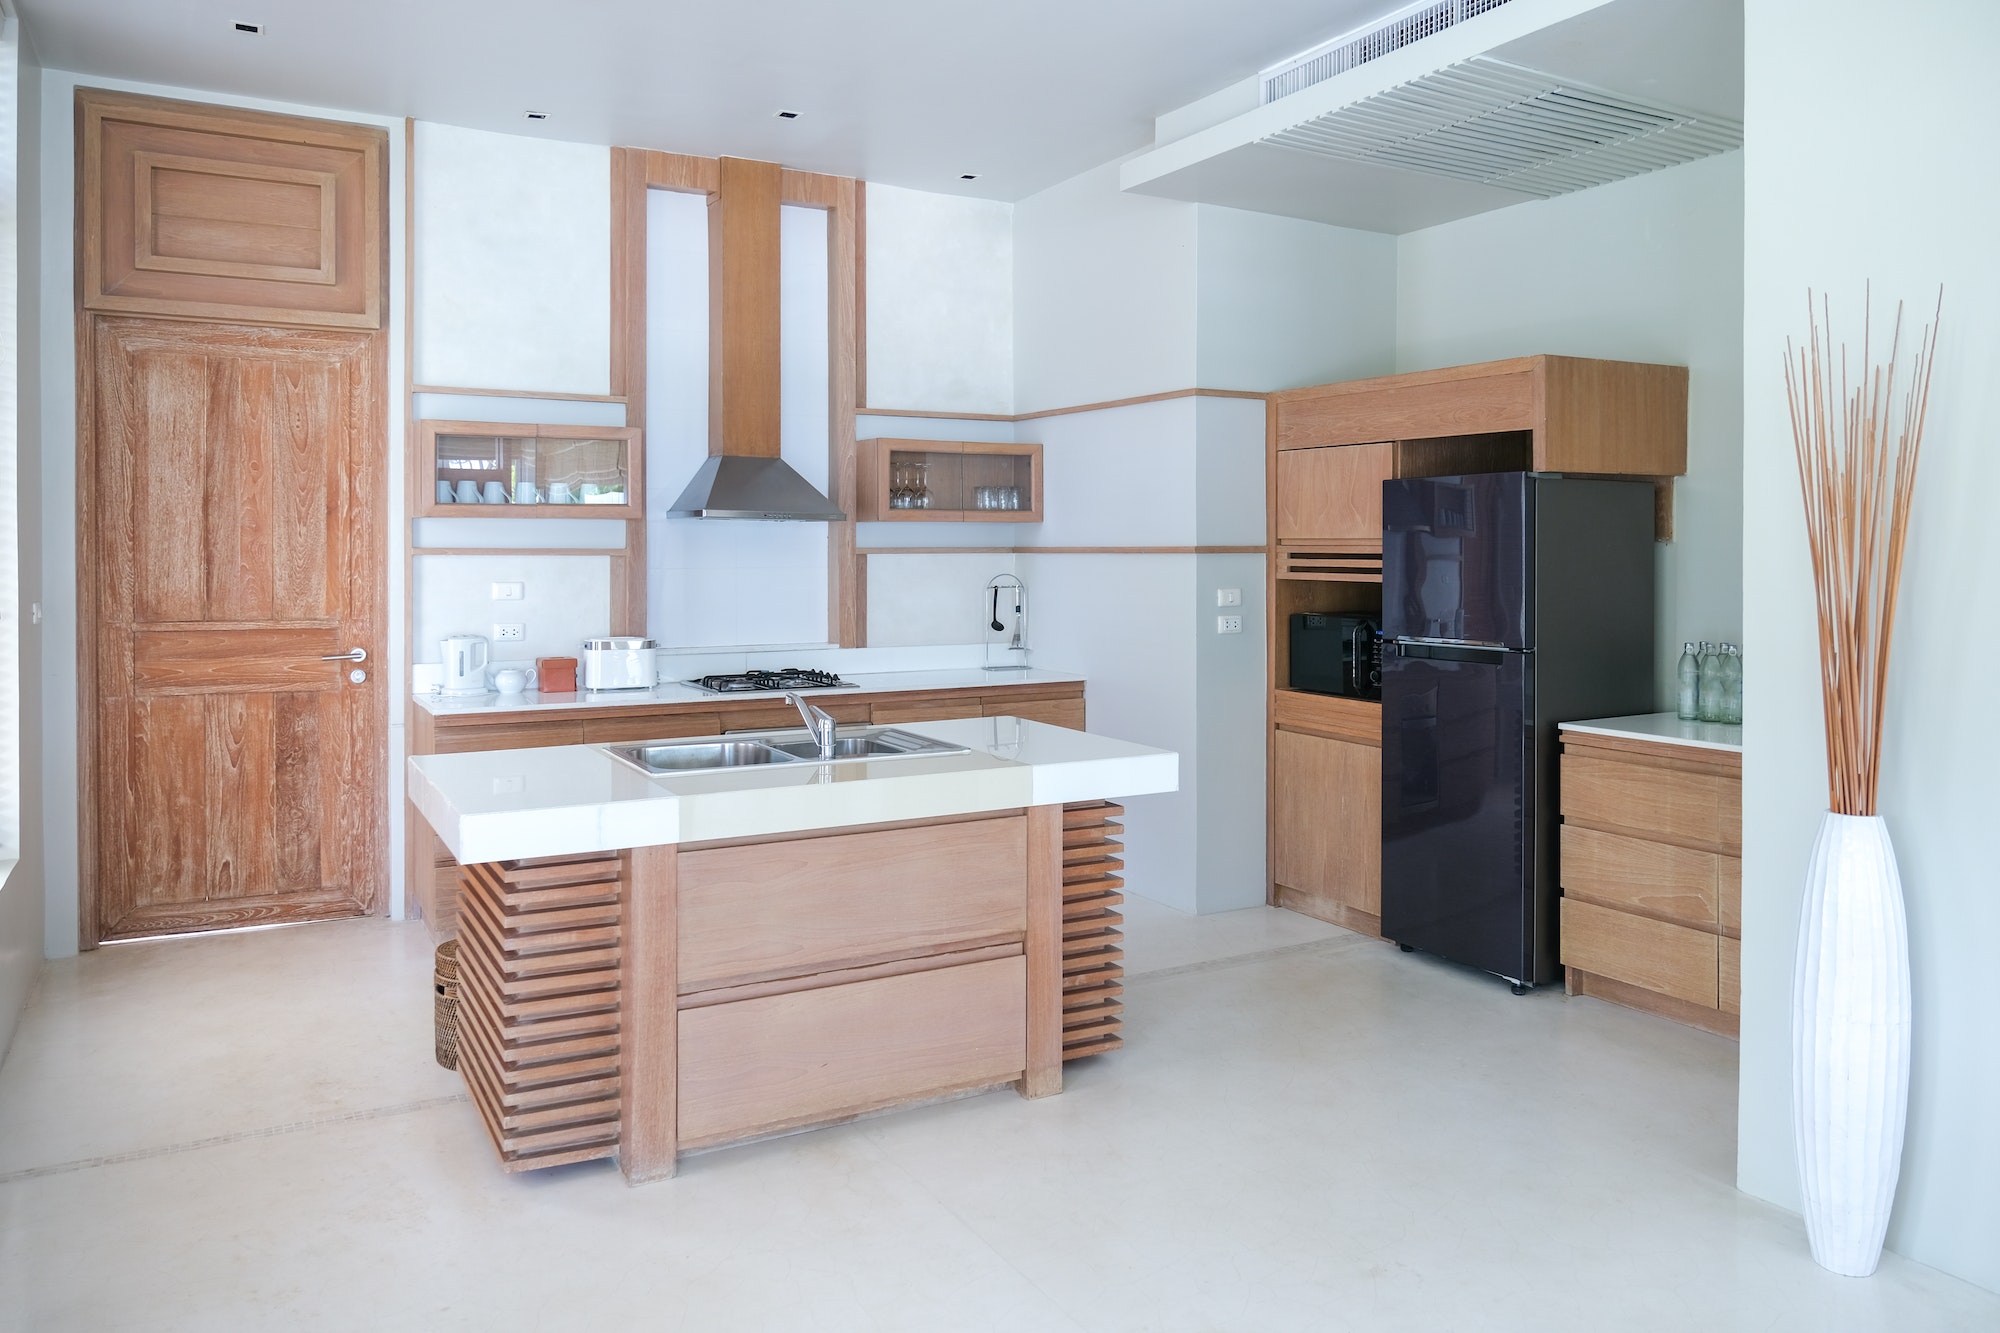 Modern wooden kitchen, Modern kitchen with an open design